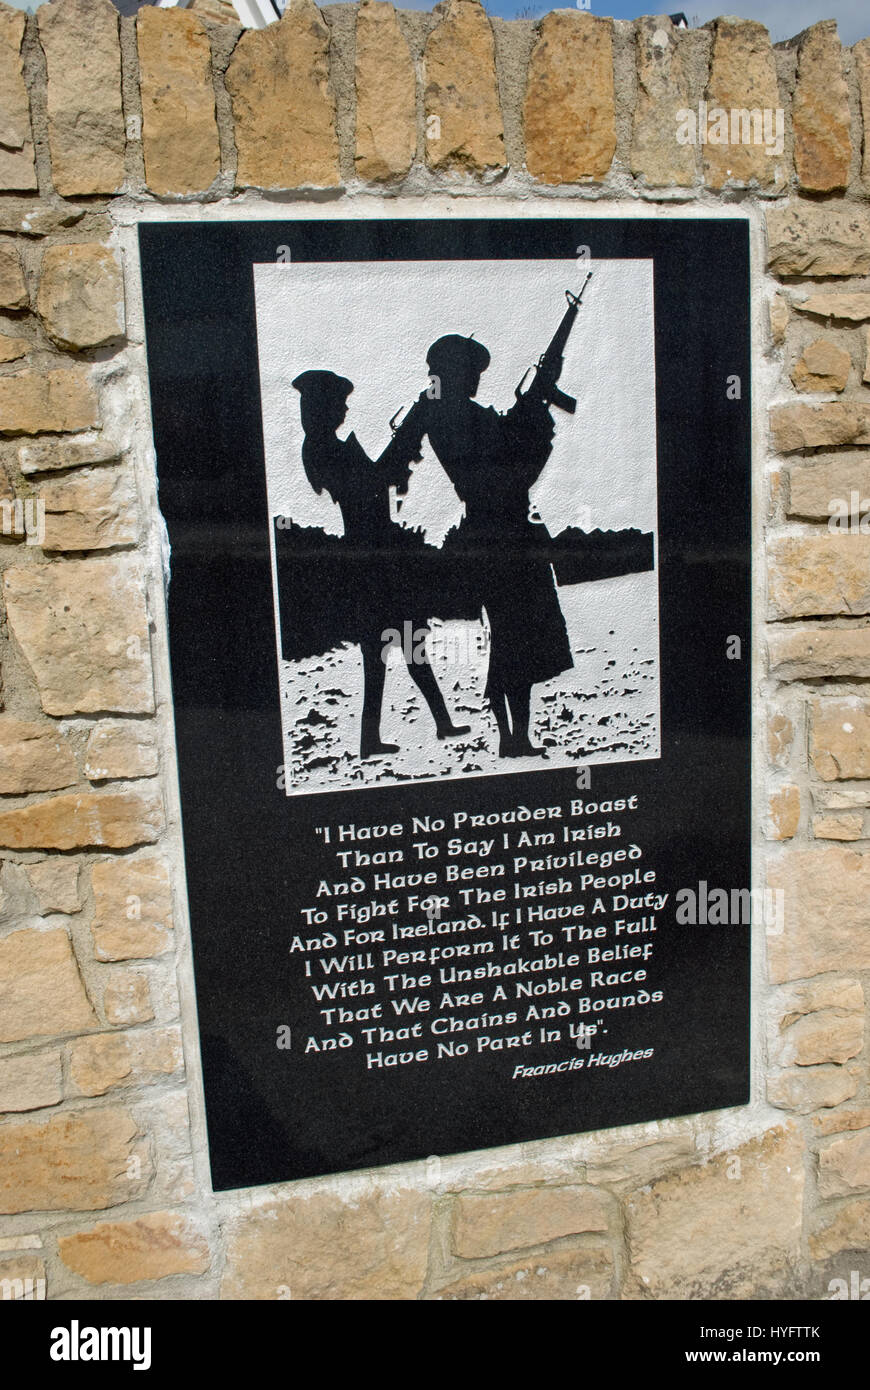 Gedenktafel an rumboe Martyrs' Monument dedicated vounteers, die kämpften und starben für die irische Freiheit zu Ira hatte. Stockfoto